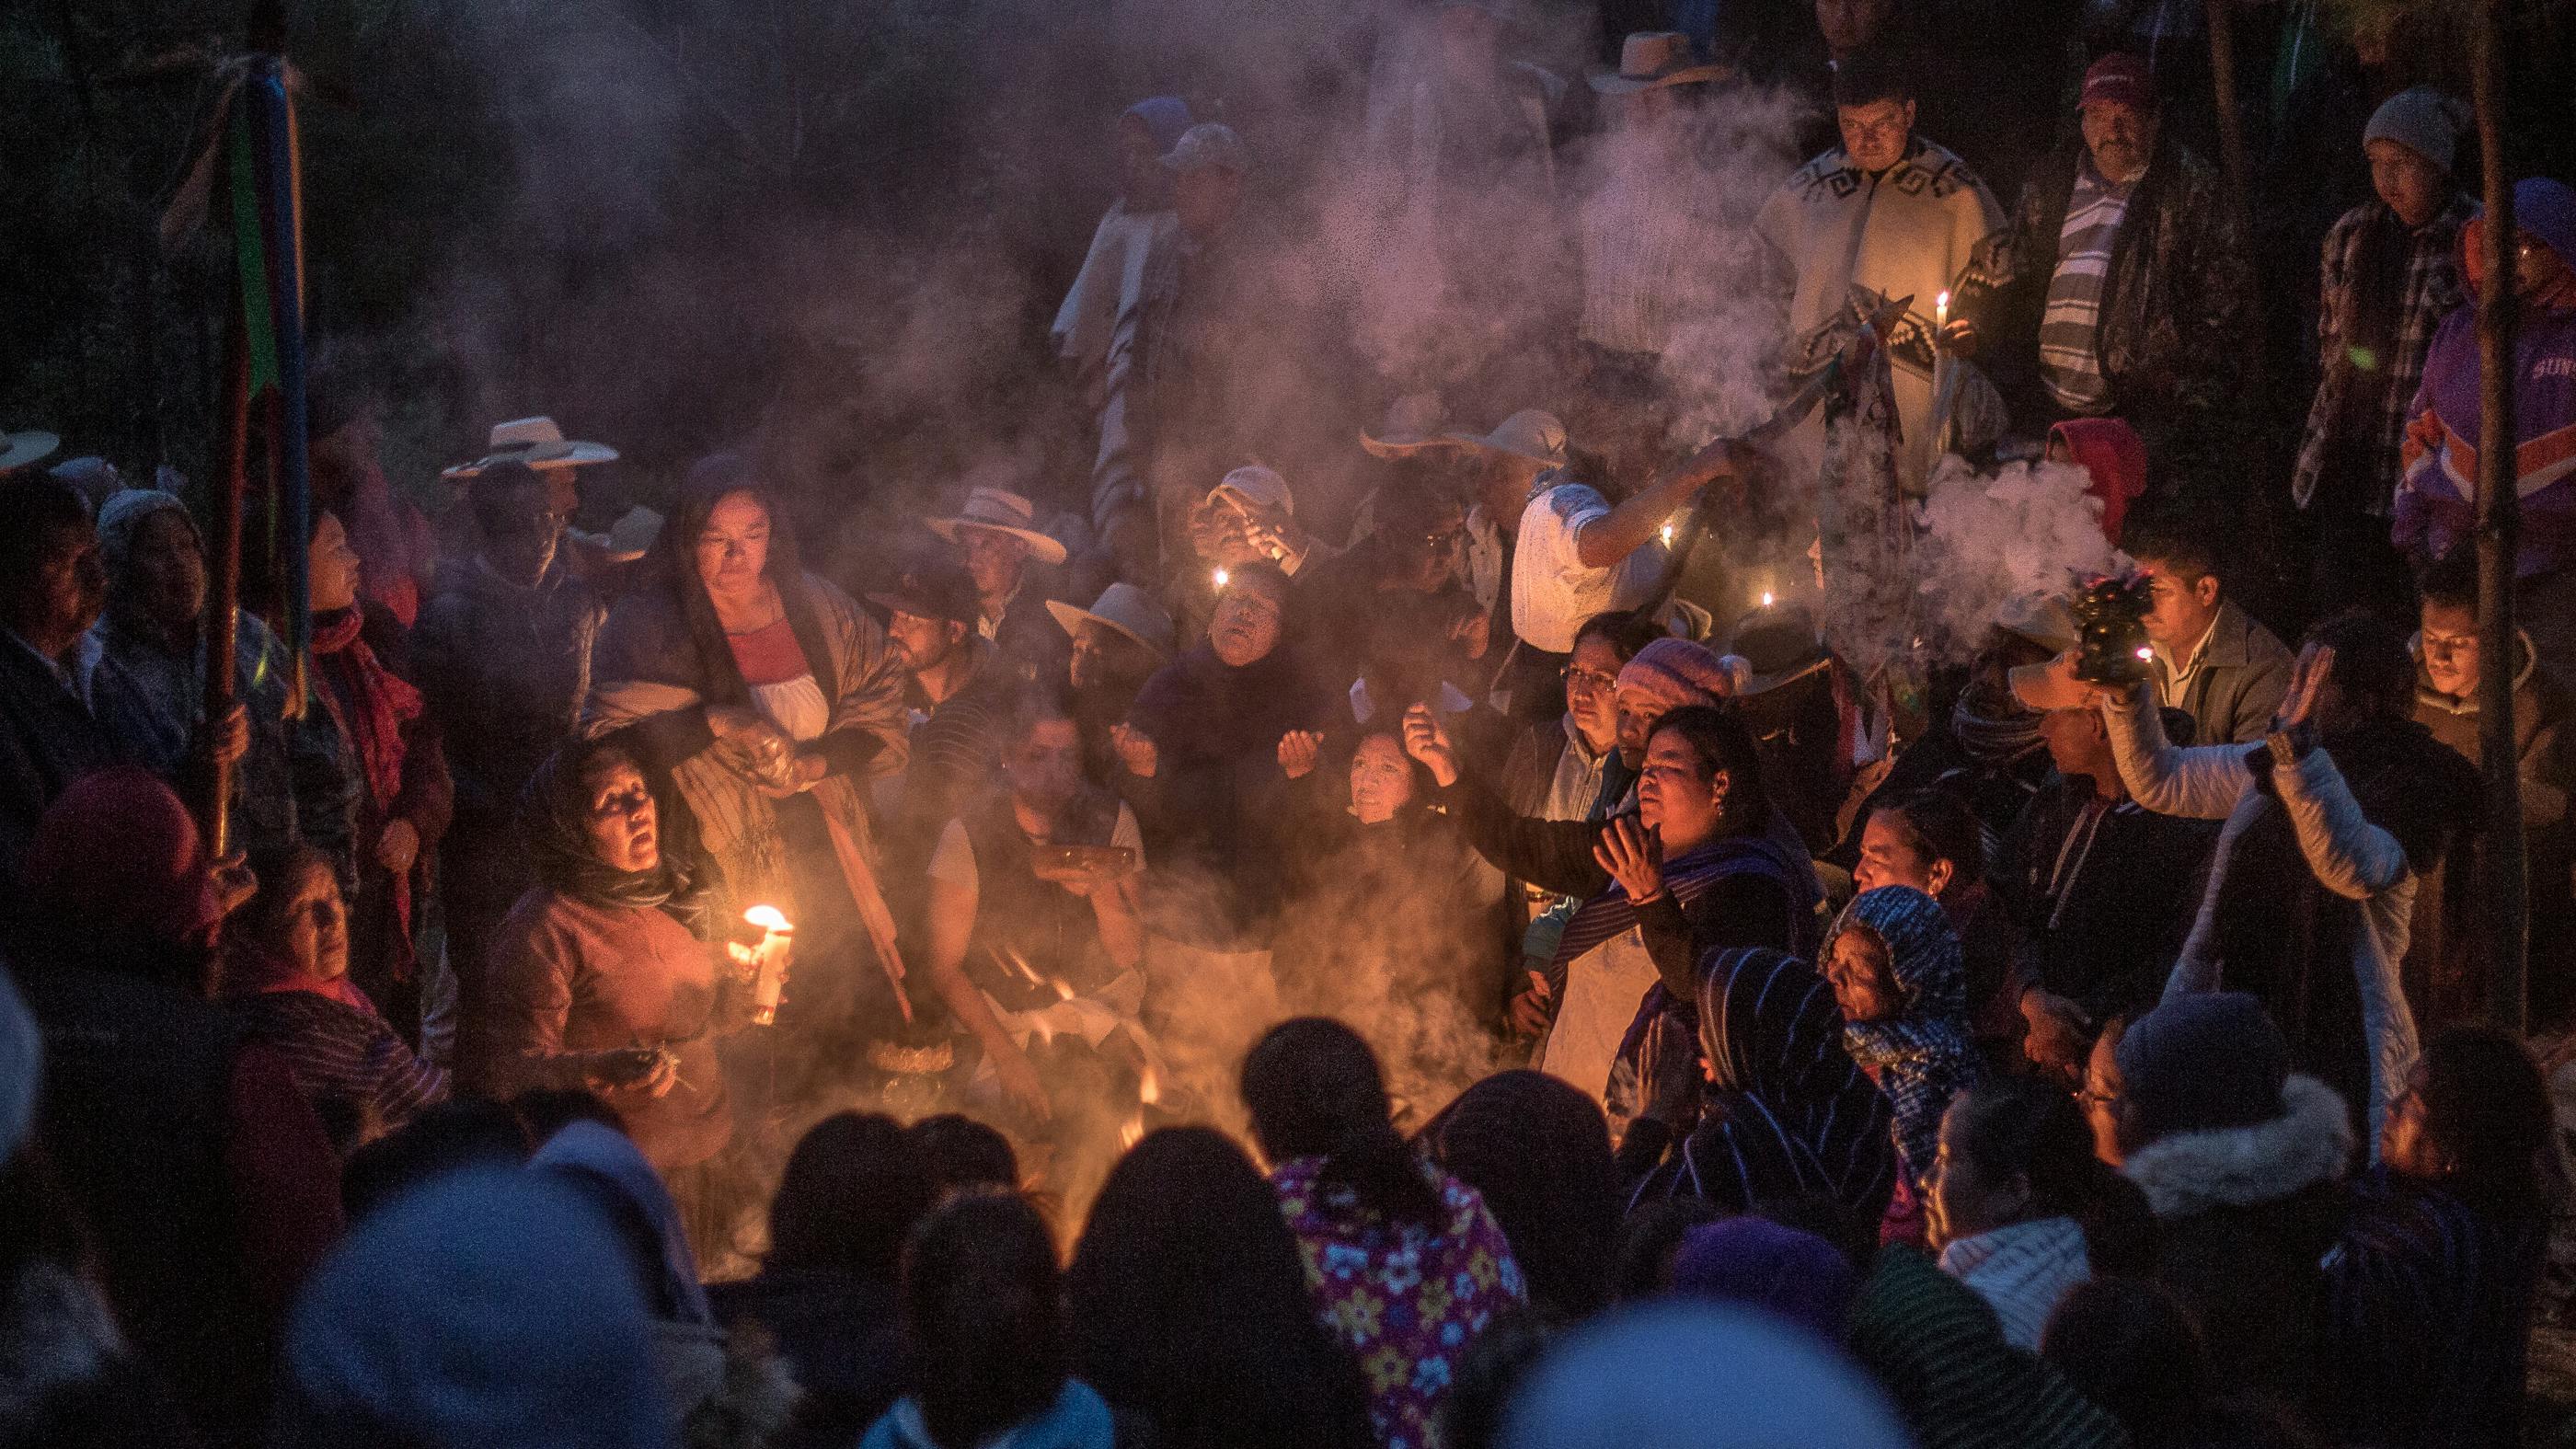 Eine größere Menschengruppe sitzt kreisförmig um ein Lagerfeuer, dahinter stehen weitere Menschen. Zwei Menschen am Feuer gestikulieren mit den Armen.